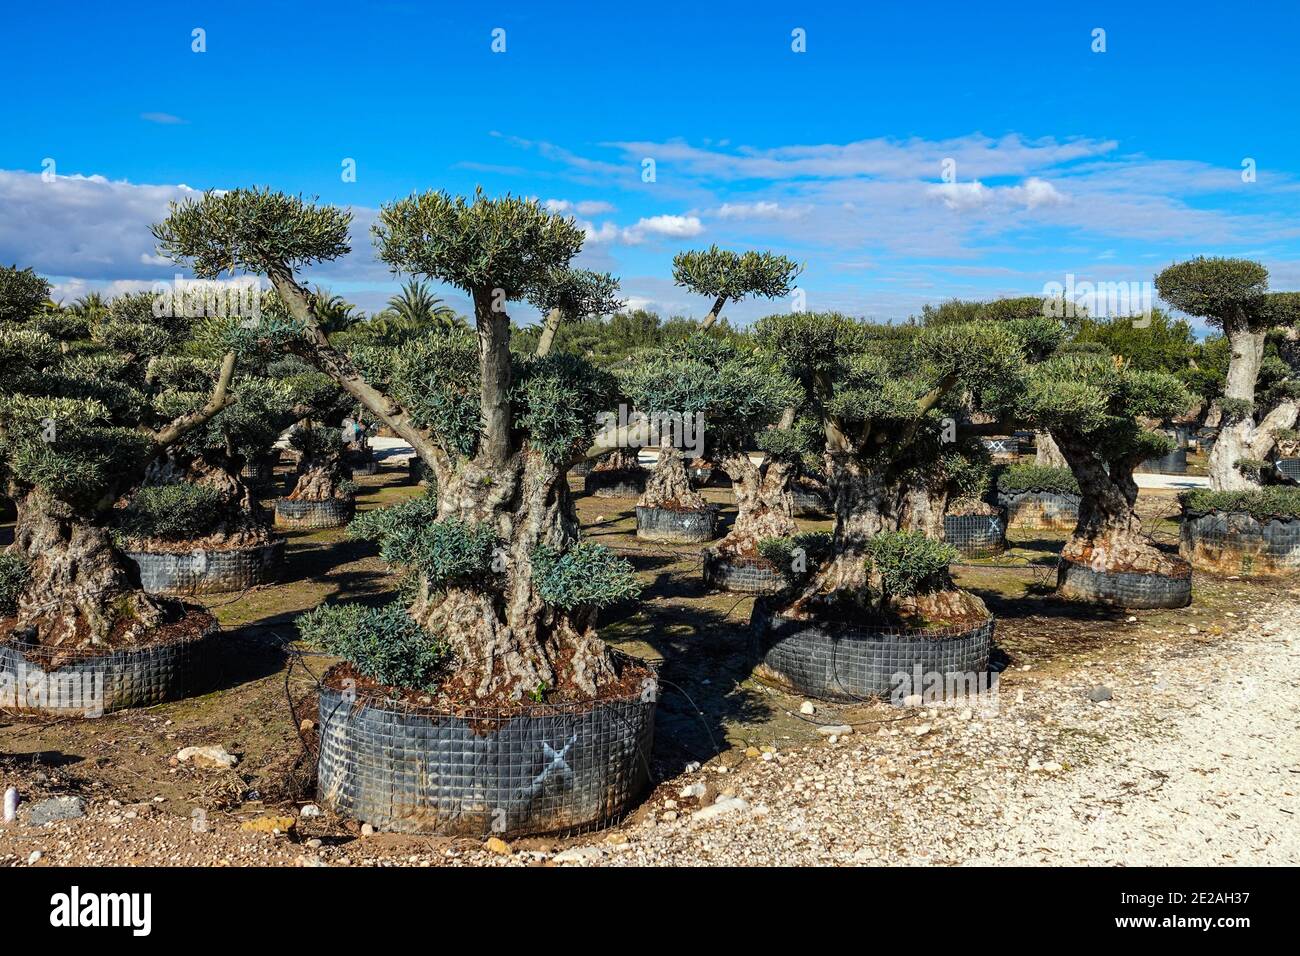 Pépinière pour la culture d'oliviers dans une vaste zone agricole plate, centre de jardin près d'Elche, Costa Blanca, Espagne Banque D'Images